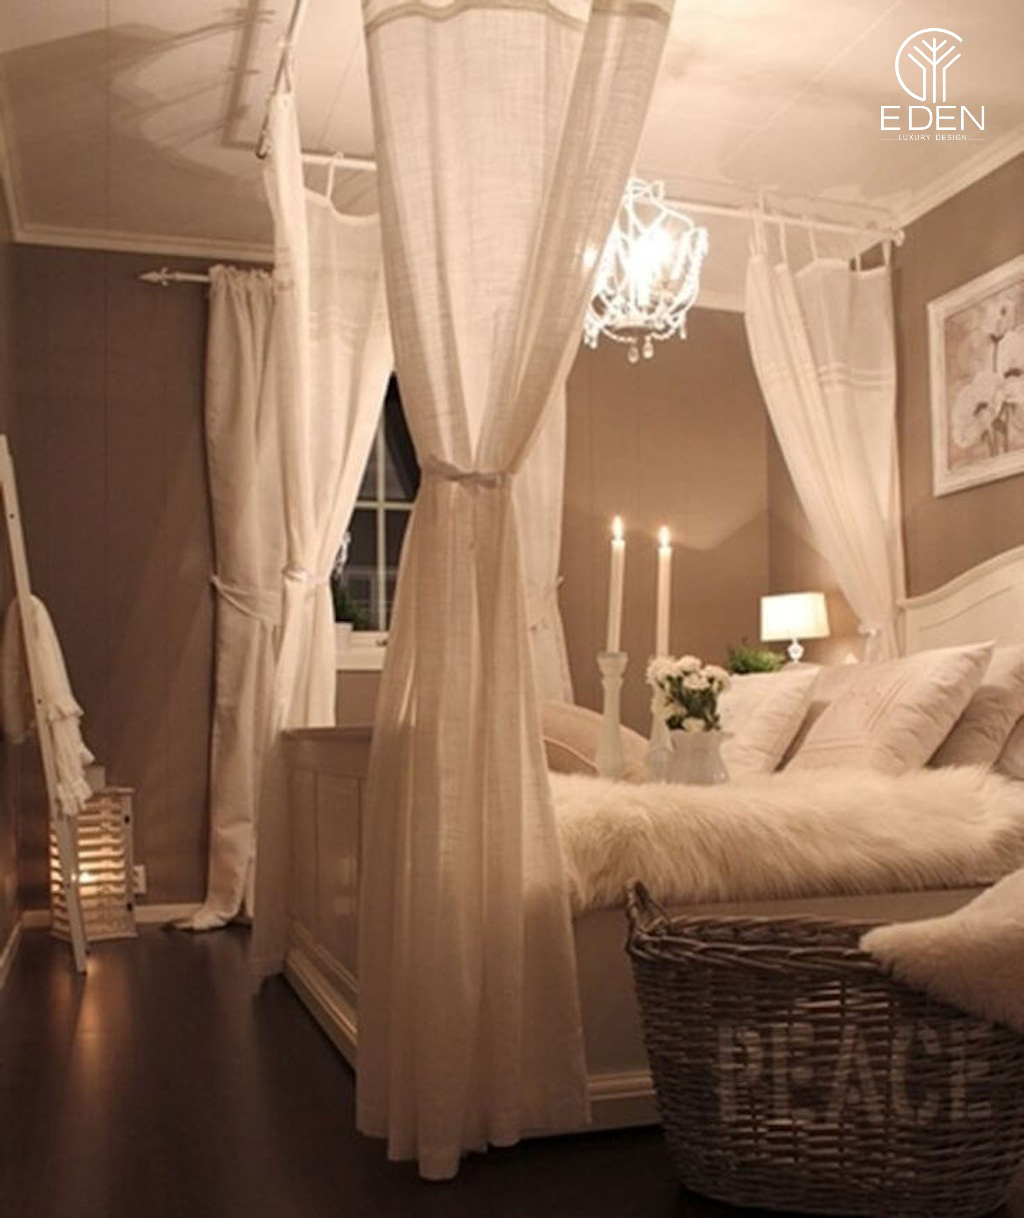 Có thể chọn tone màu trắng cho giường ngủ và kết hợp các họa tiết sao cho hài hòa phong cách Vintage